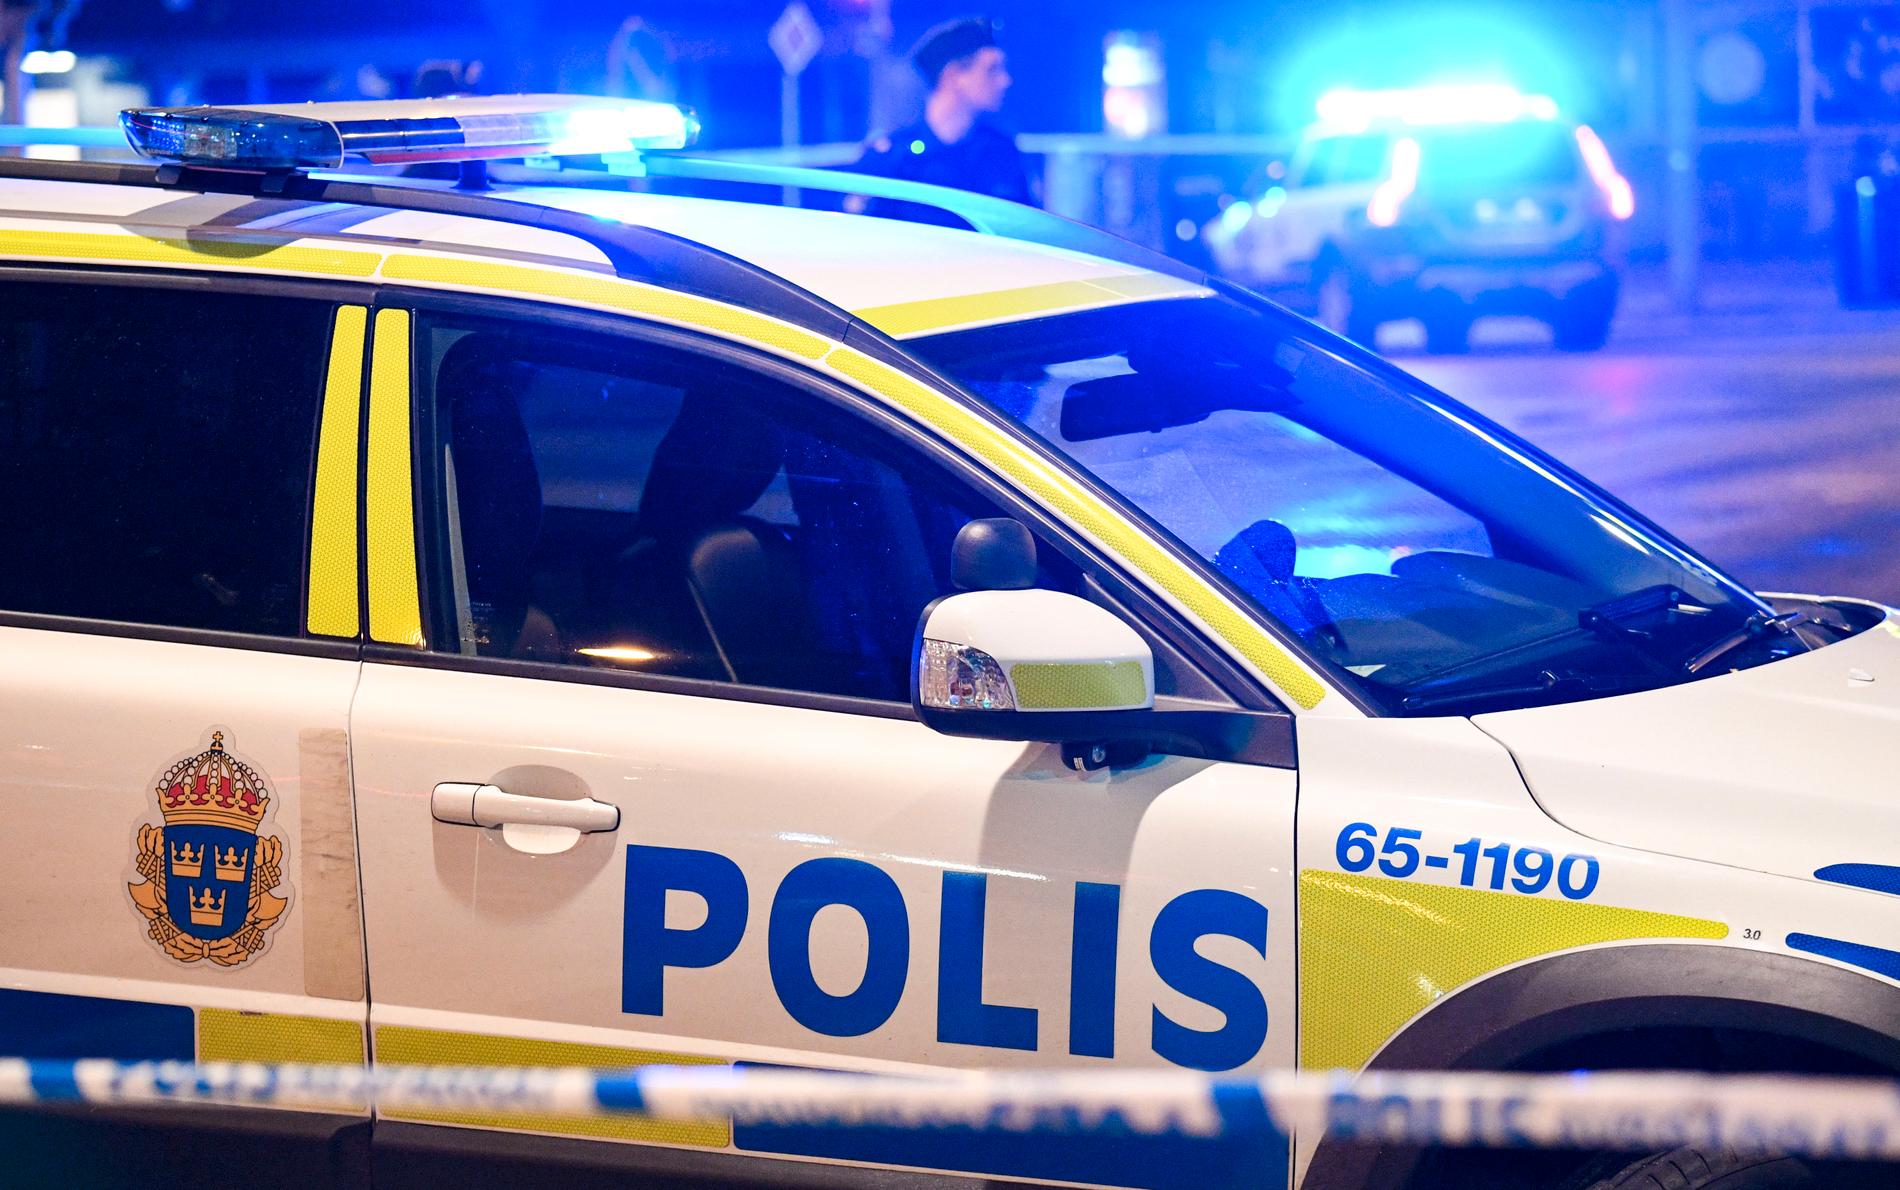 Två män har anhållits misstänkta för att ha våldtagit en kvinna på en innergård i centrala Göteborg, meddelar polisen. Arkivbild.